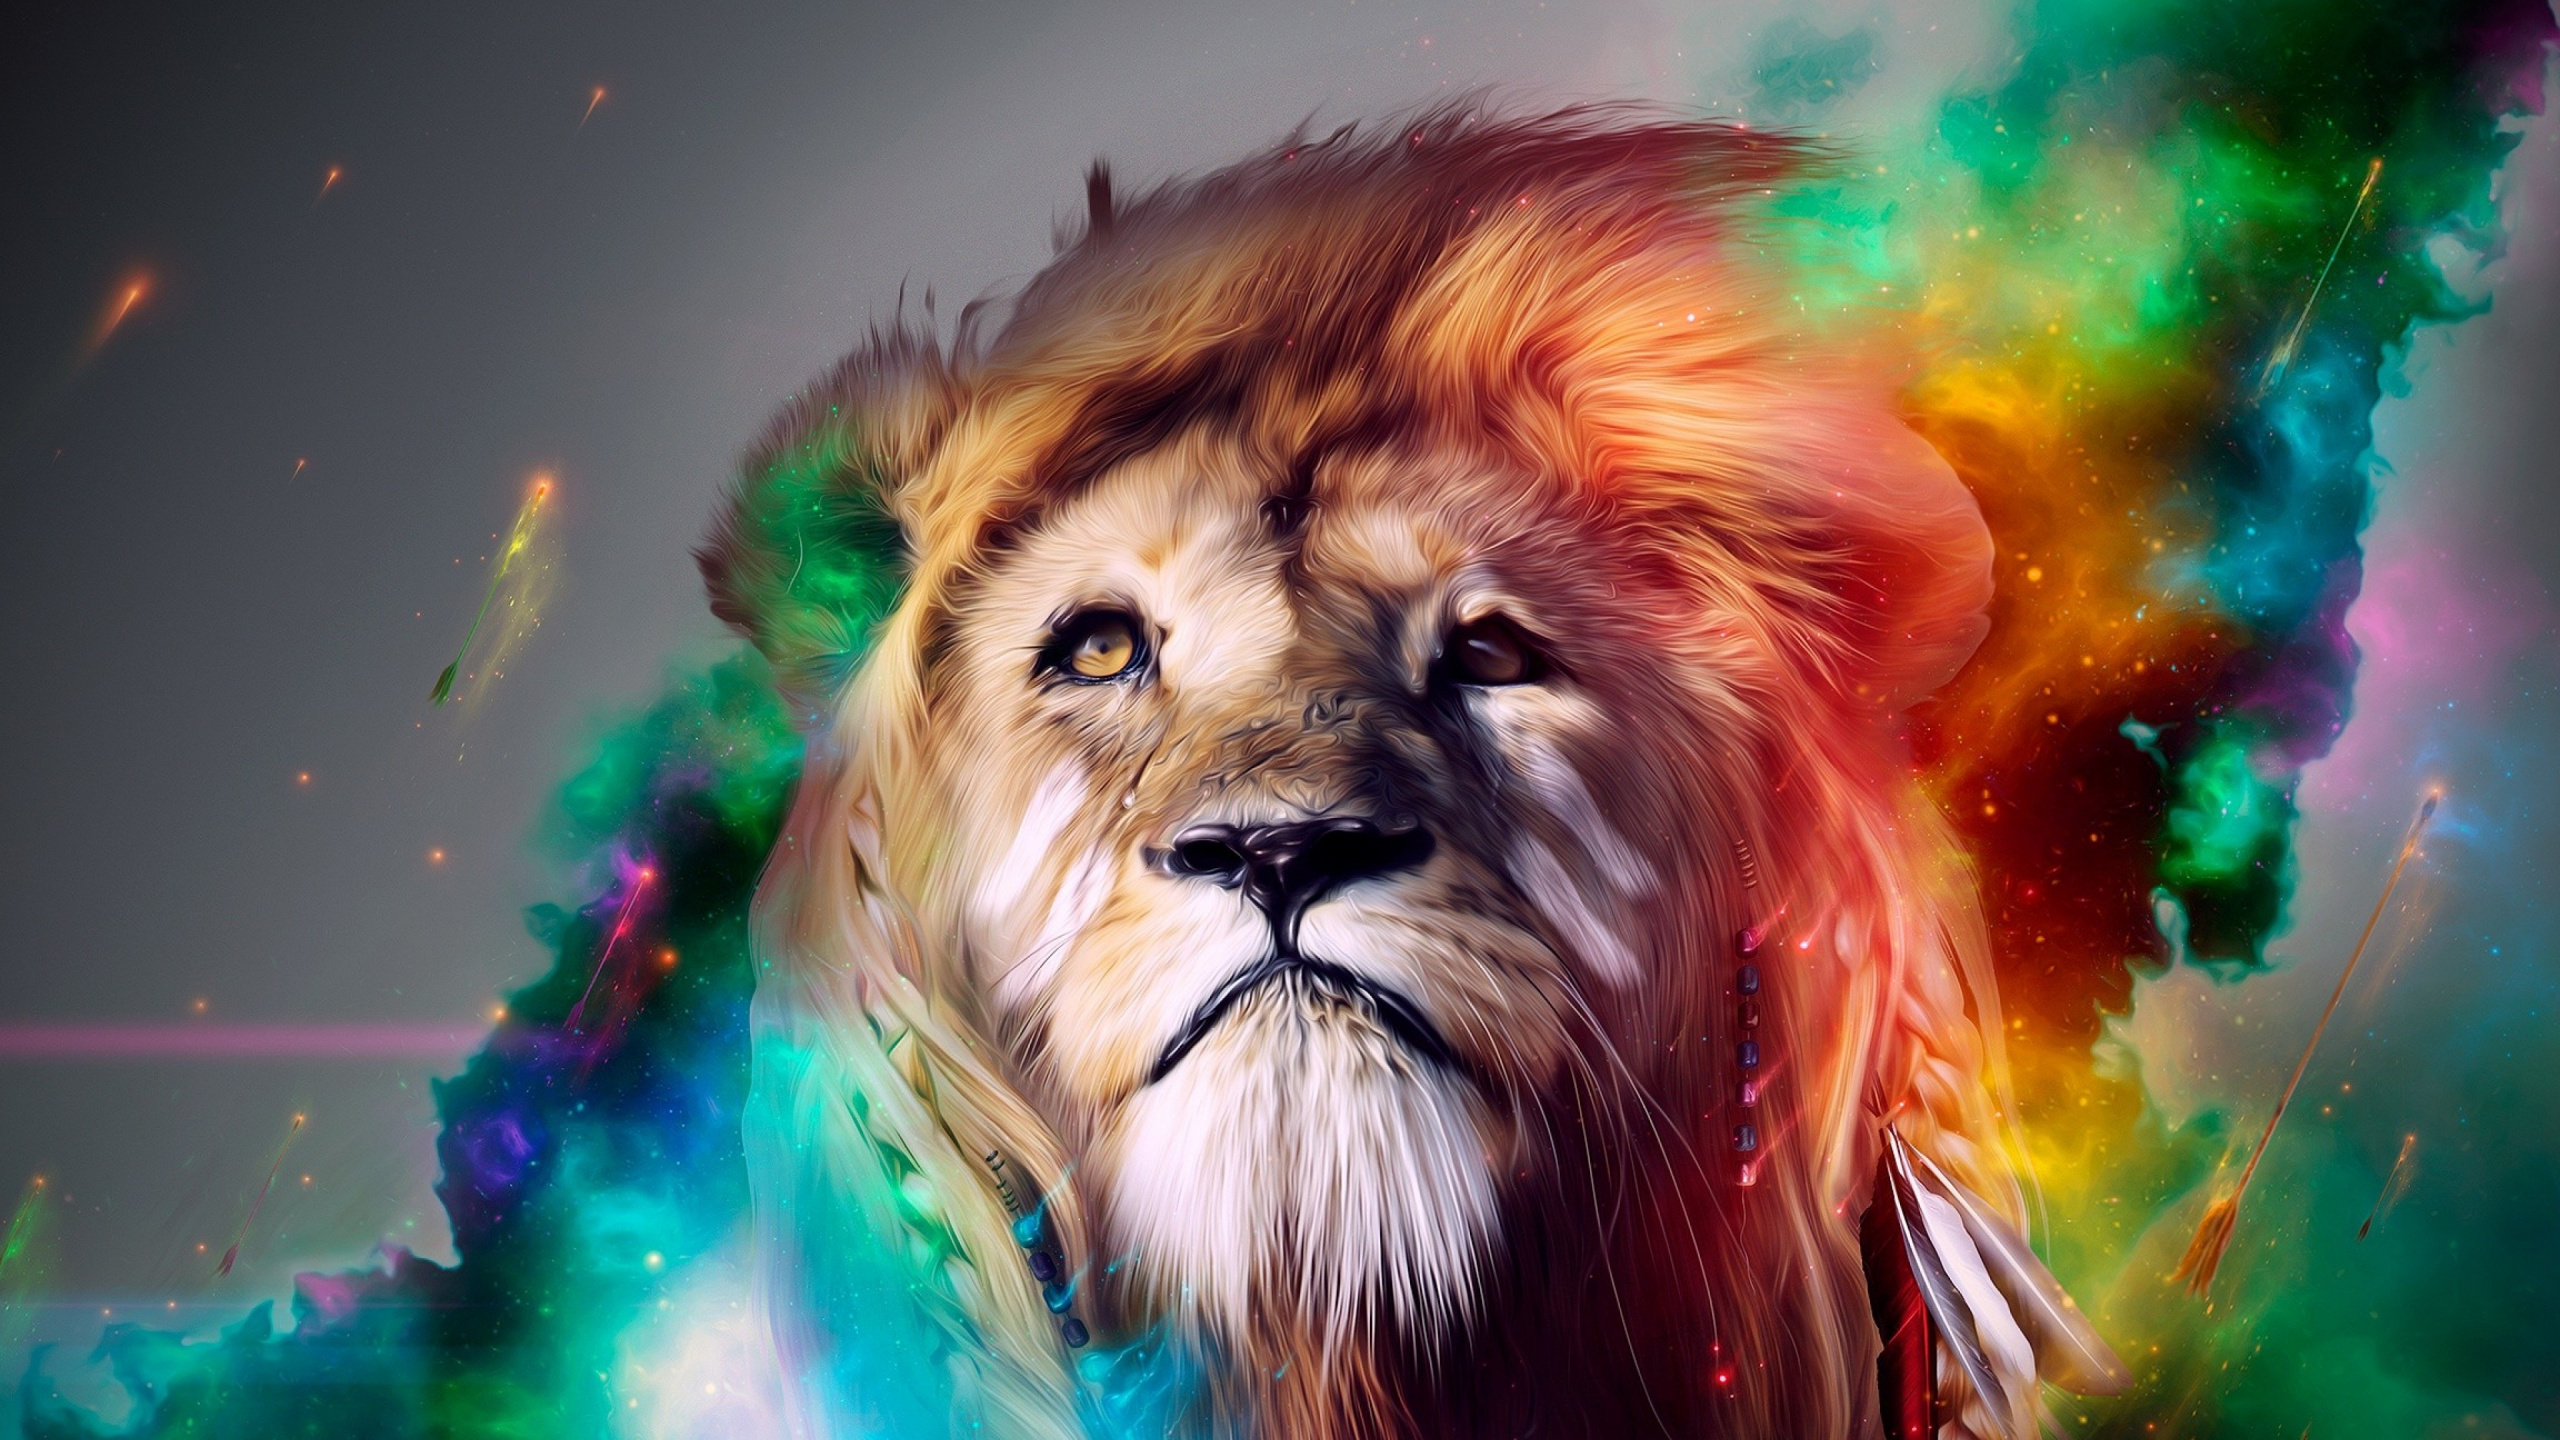 狮子, 猫科, 大型猫科动物, 艺术, 野生动物 壁纸 2560x1440 允许